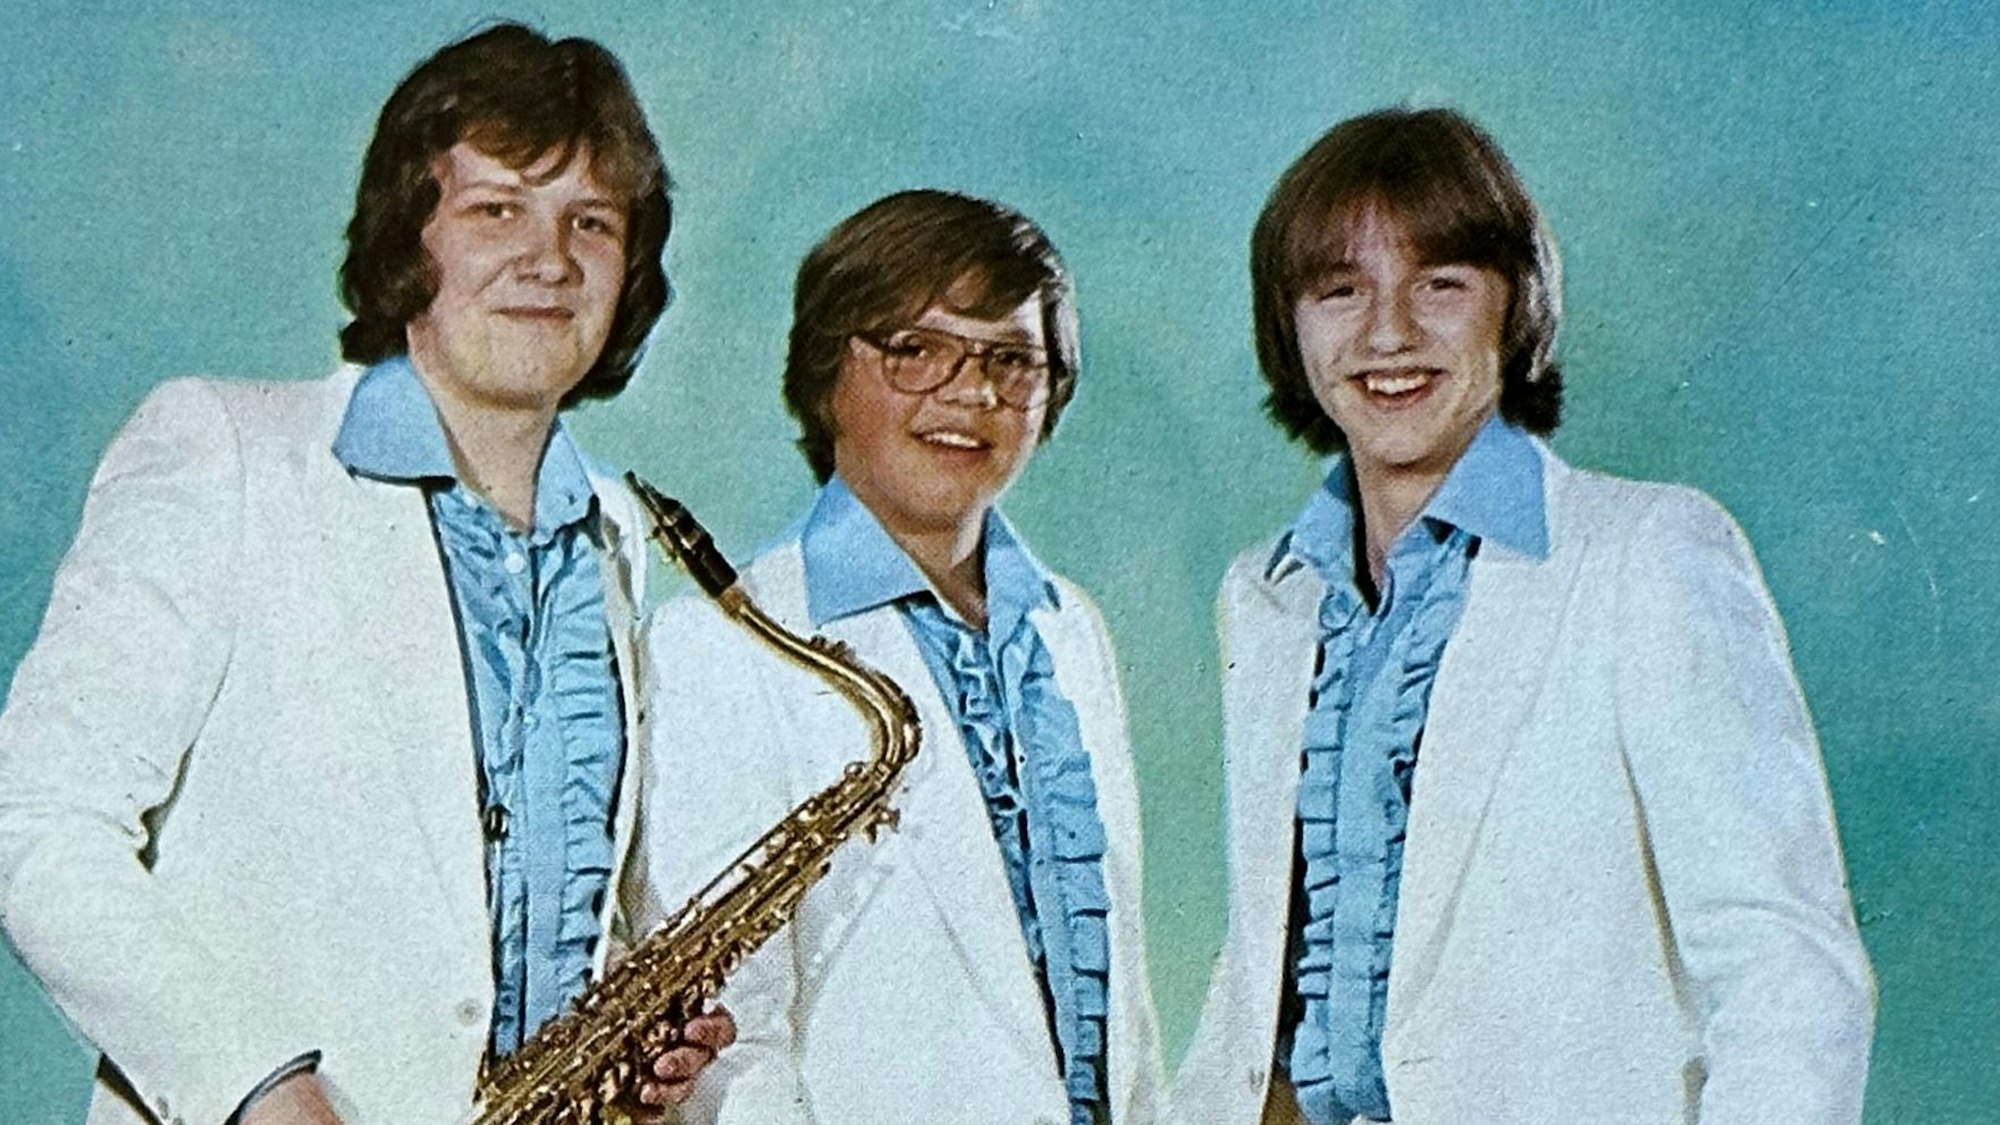 Die drei Bandmitglieder tragen blaue Rüschenhemden und weiße Anzüge.